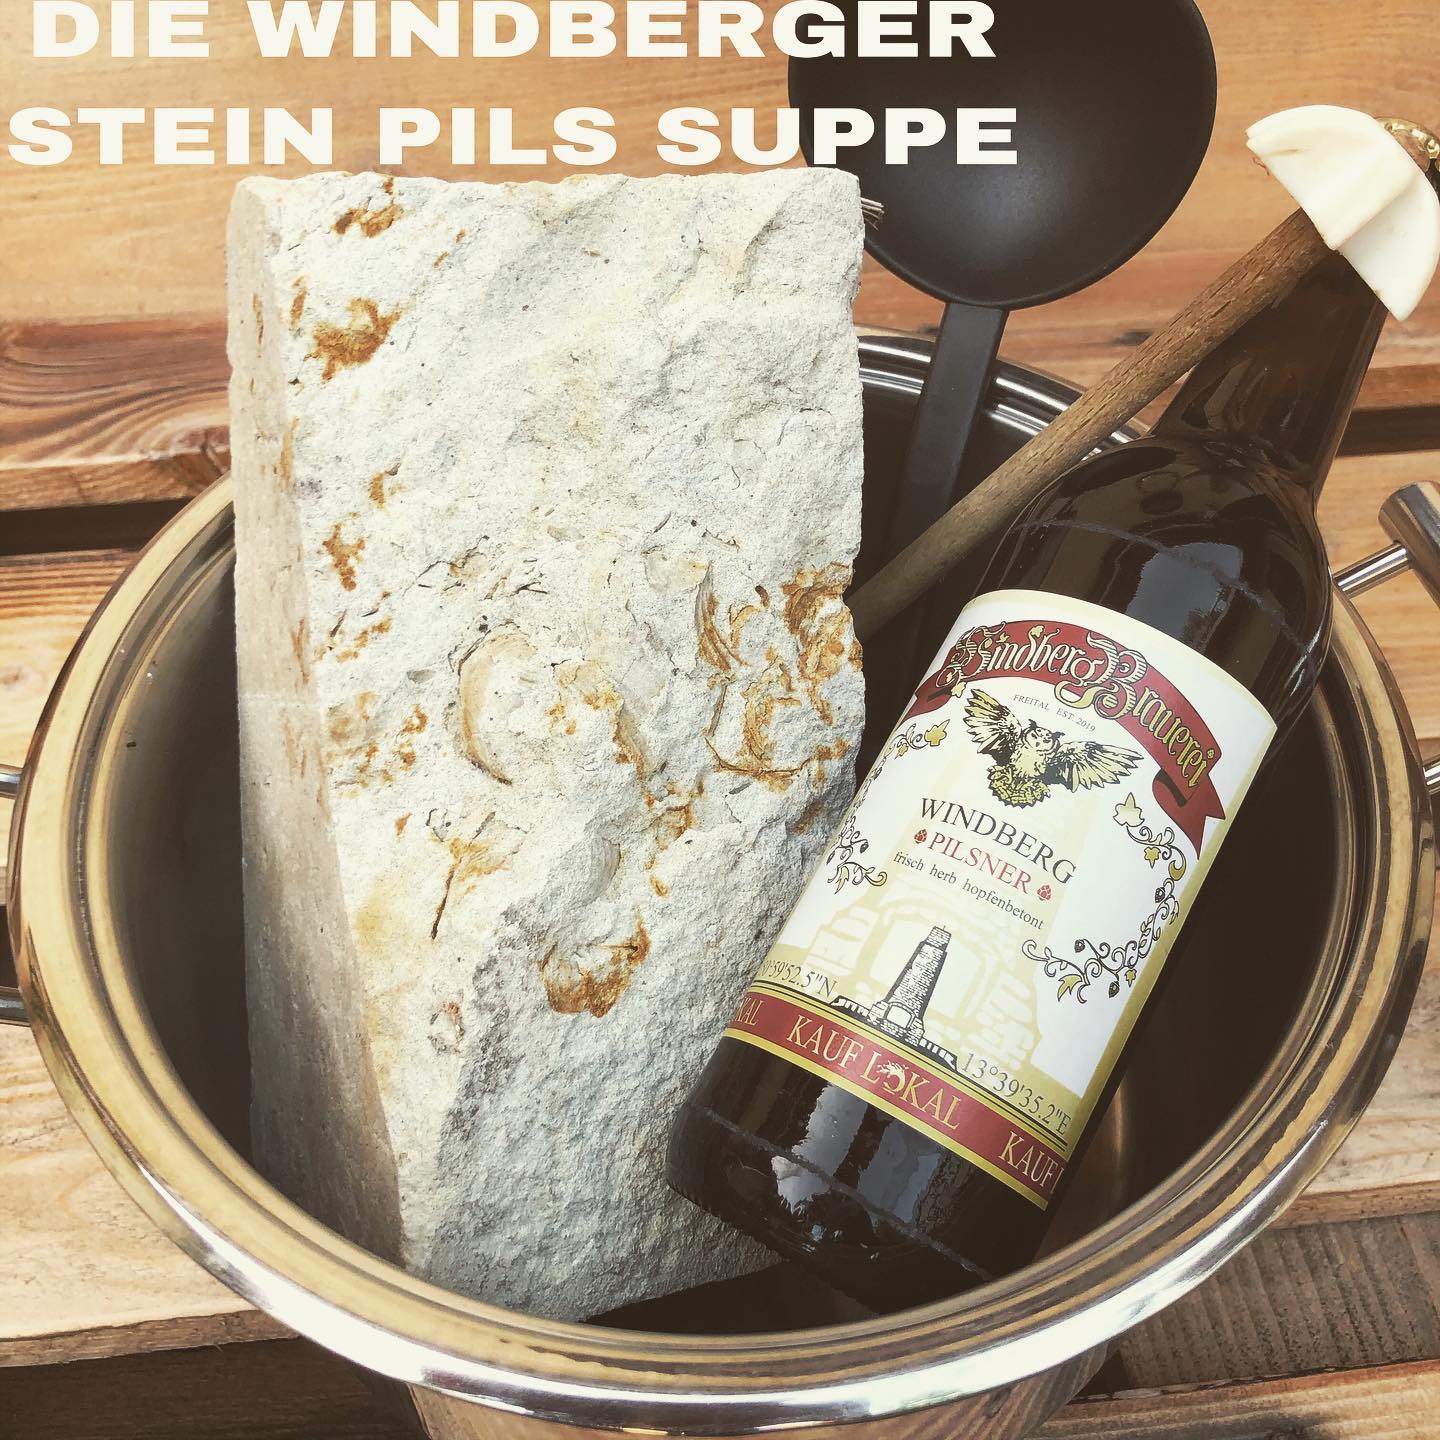 > Original Windberger Stein-Pils Suppe <